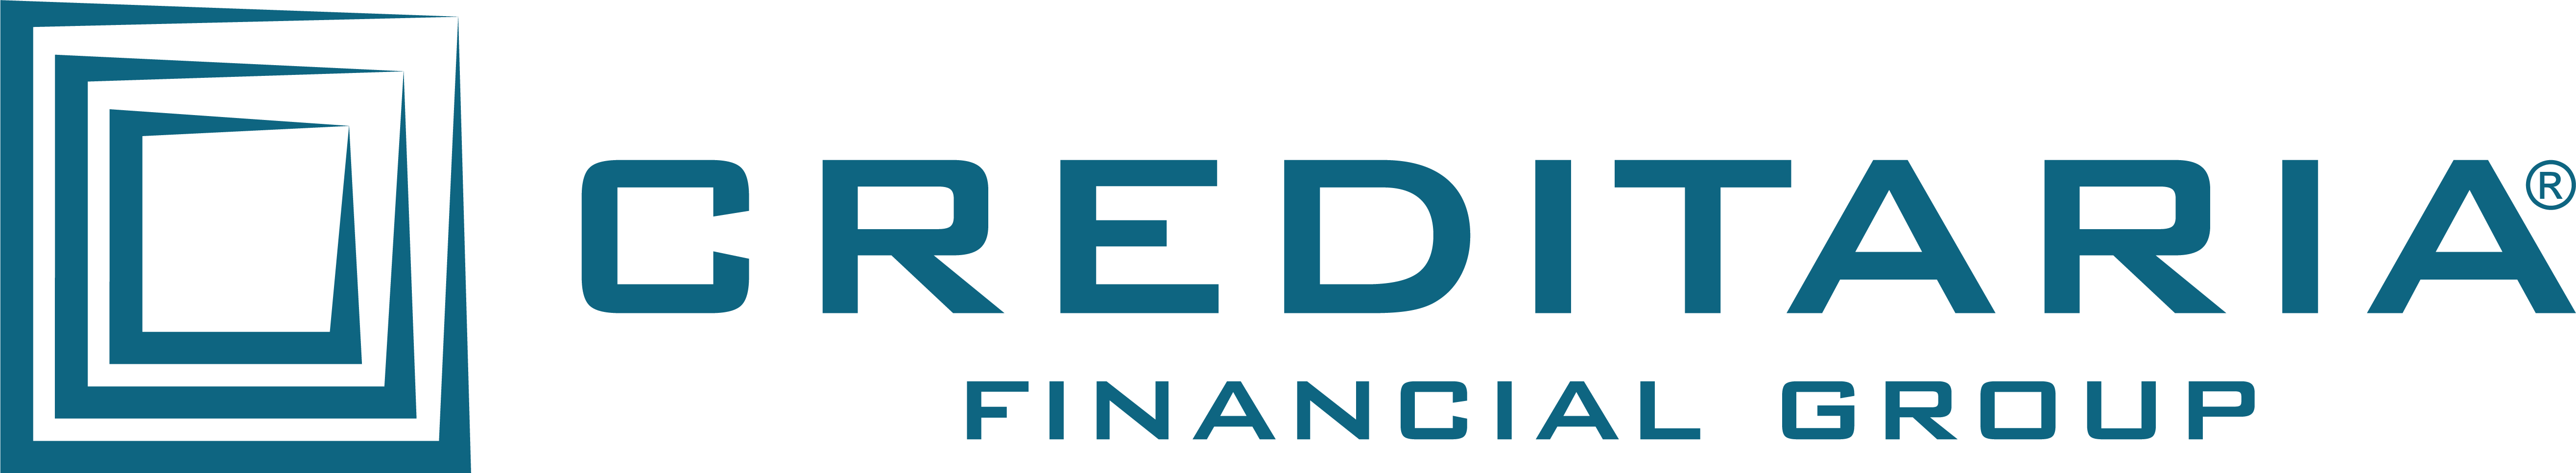 financial group logo_color